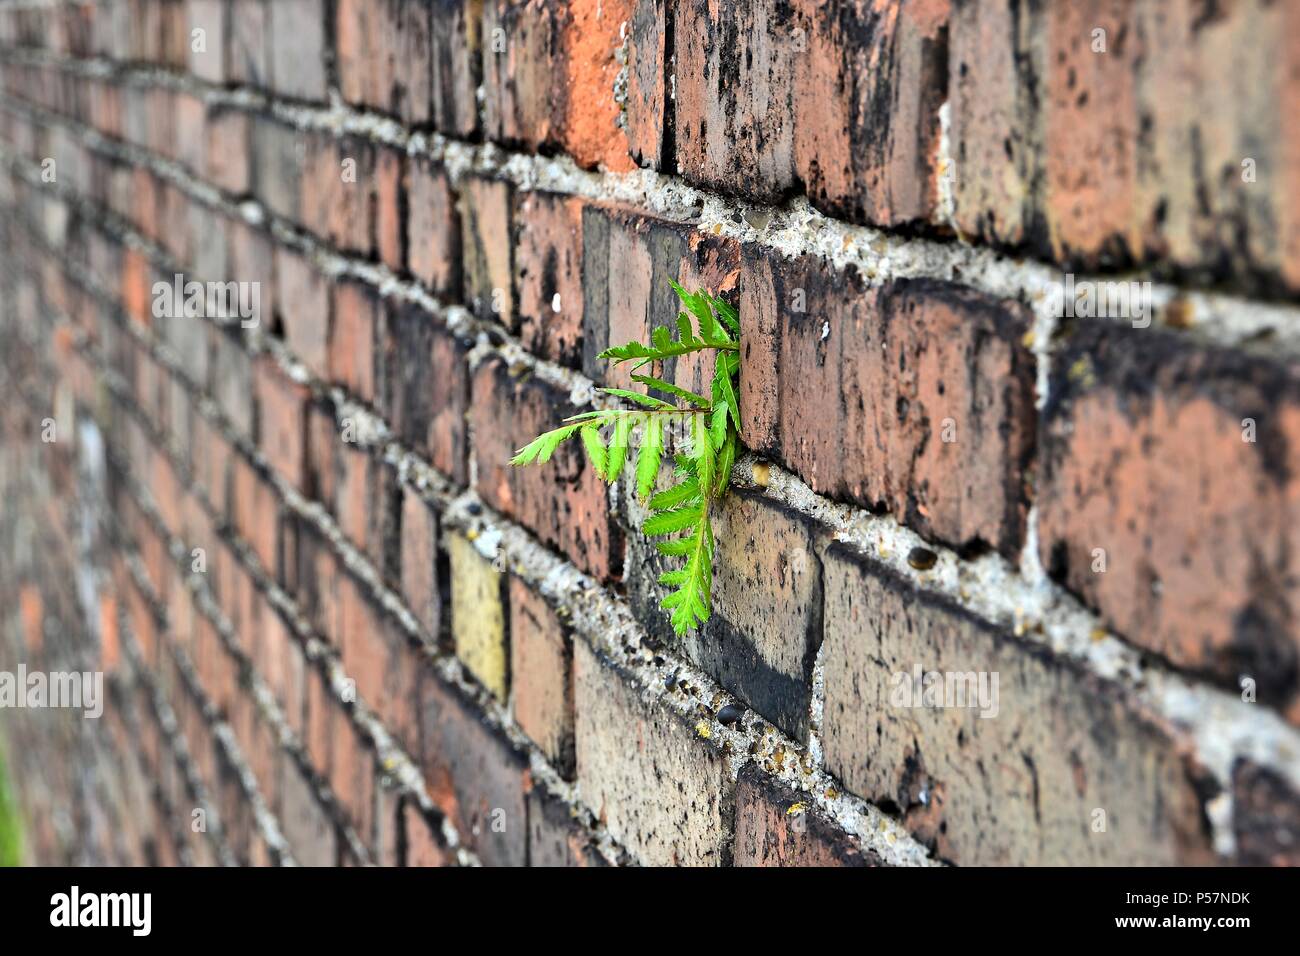 La supervivencia de una planta en una pared. Foto de stock